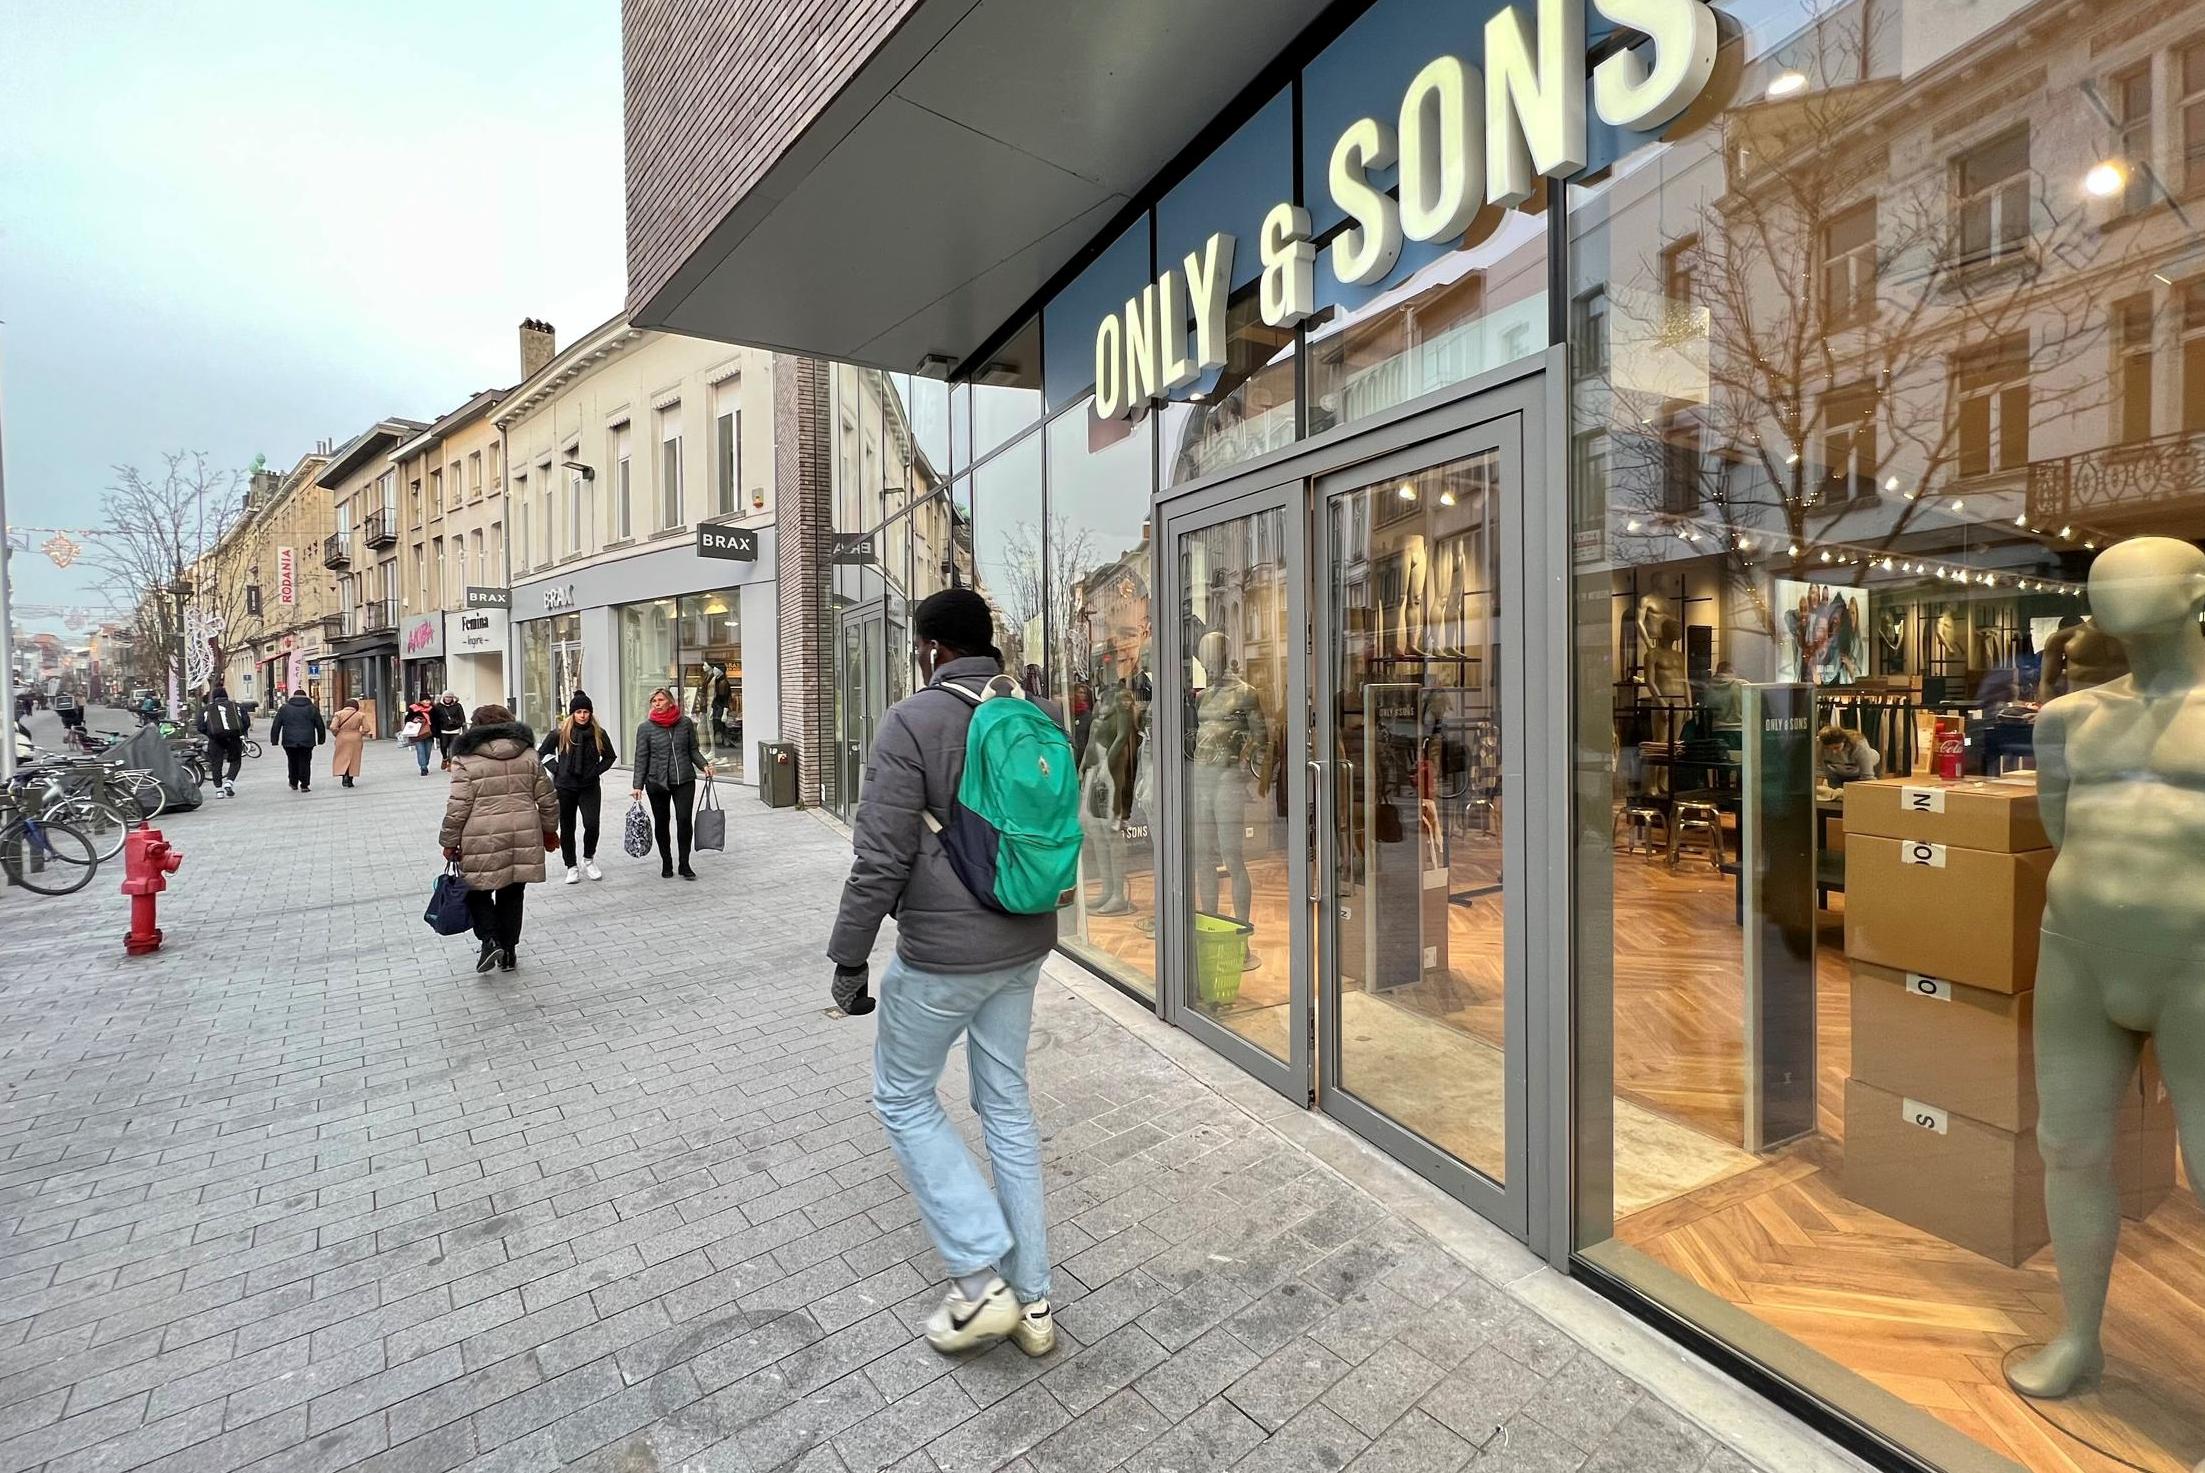 Leegstand in Bruul Only & Sons opent vestiging ook Burger King komt (Mechelen) | Het Nieuwsblad